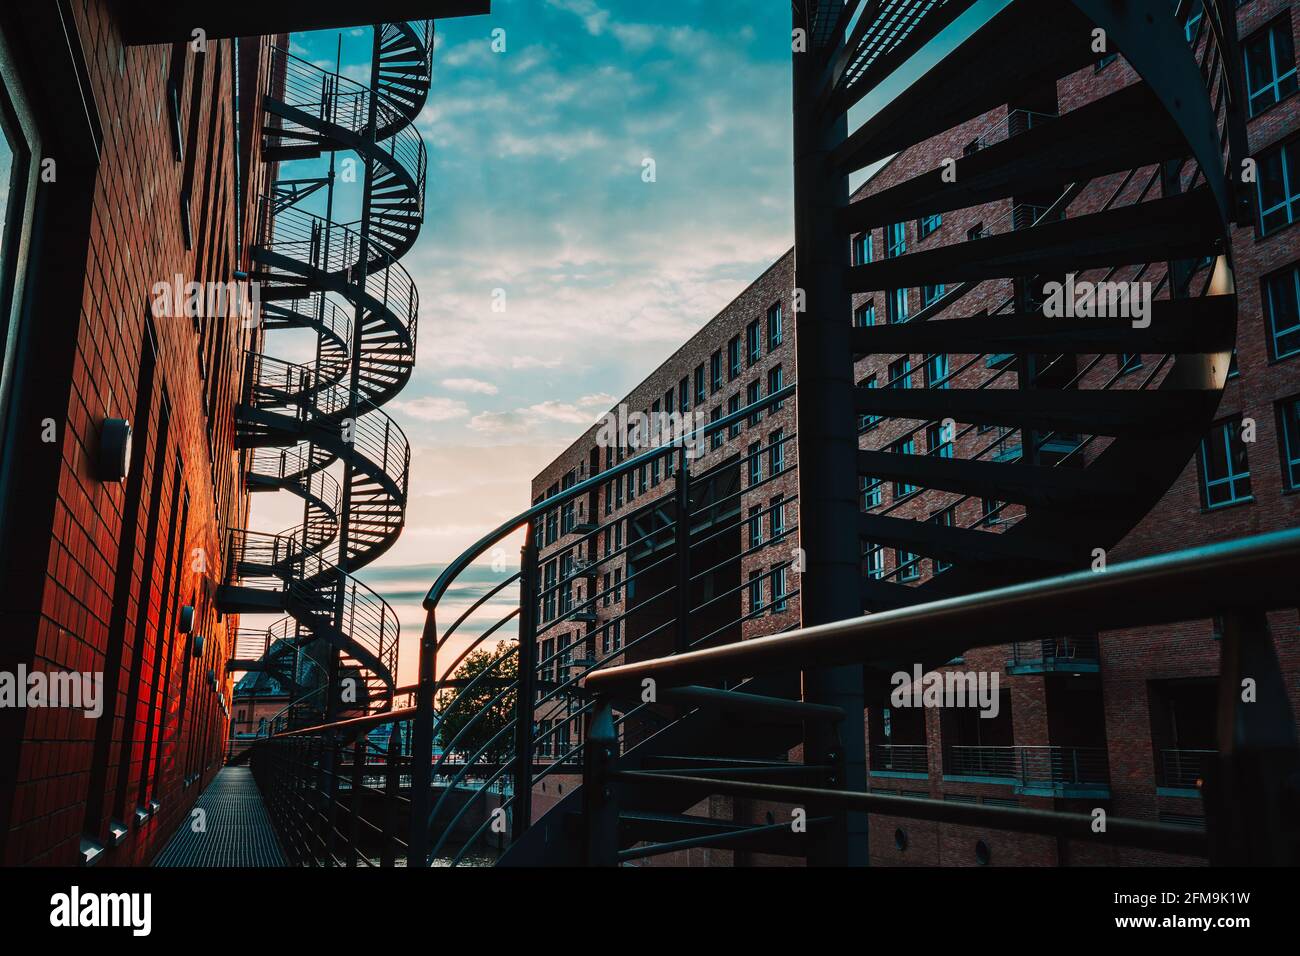 Escaliers en spirale dans l'ancien entrepôt. Bâtiments étroits en canal et briques rouges de Speicherstadt à Hambourg. Après le coucher du soleil. Banque D'Images